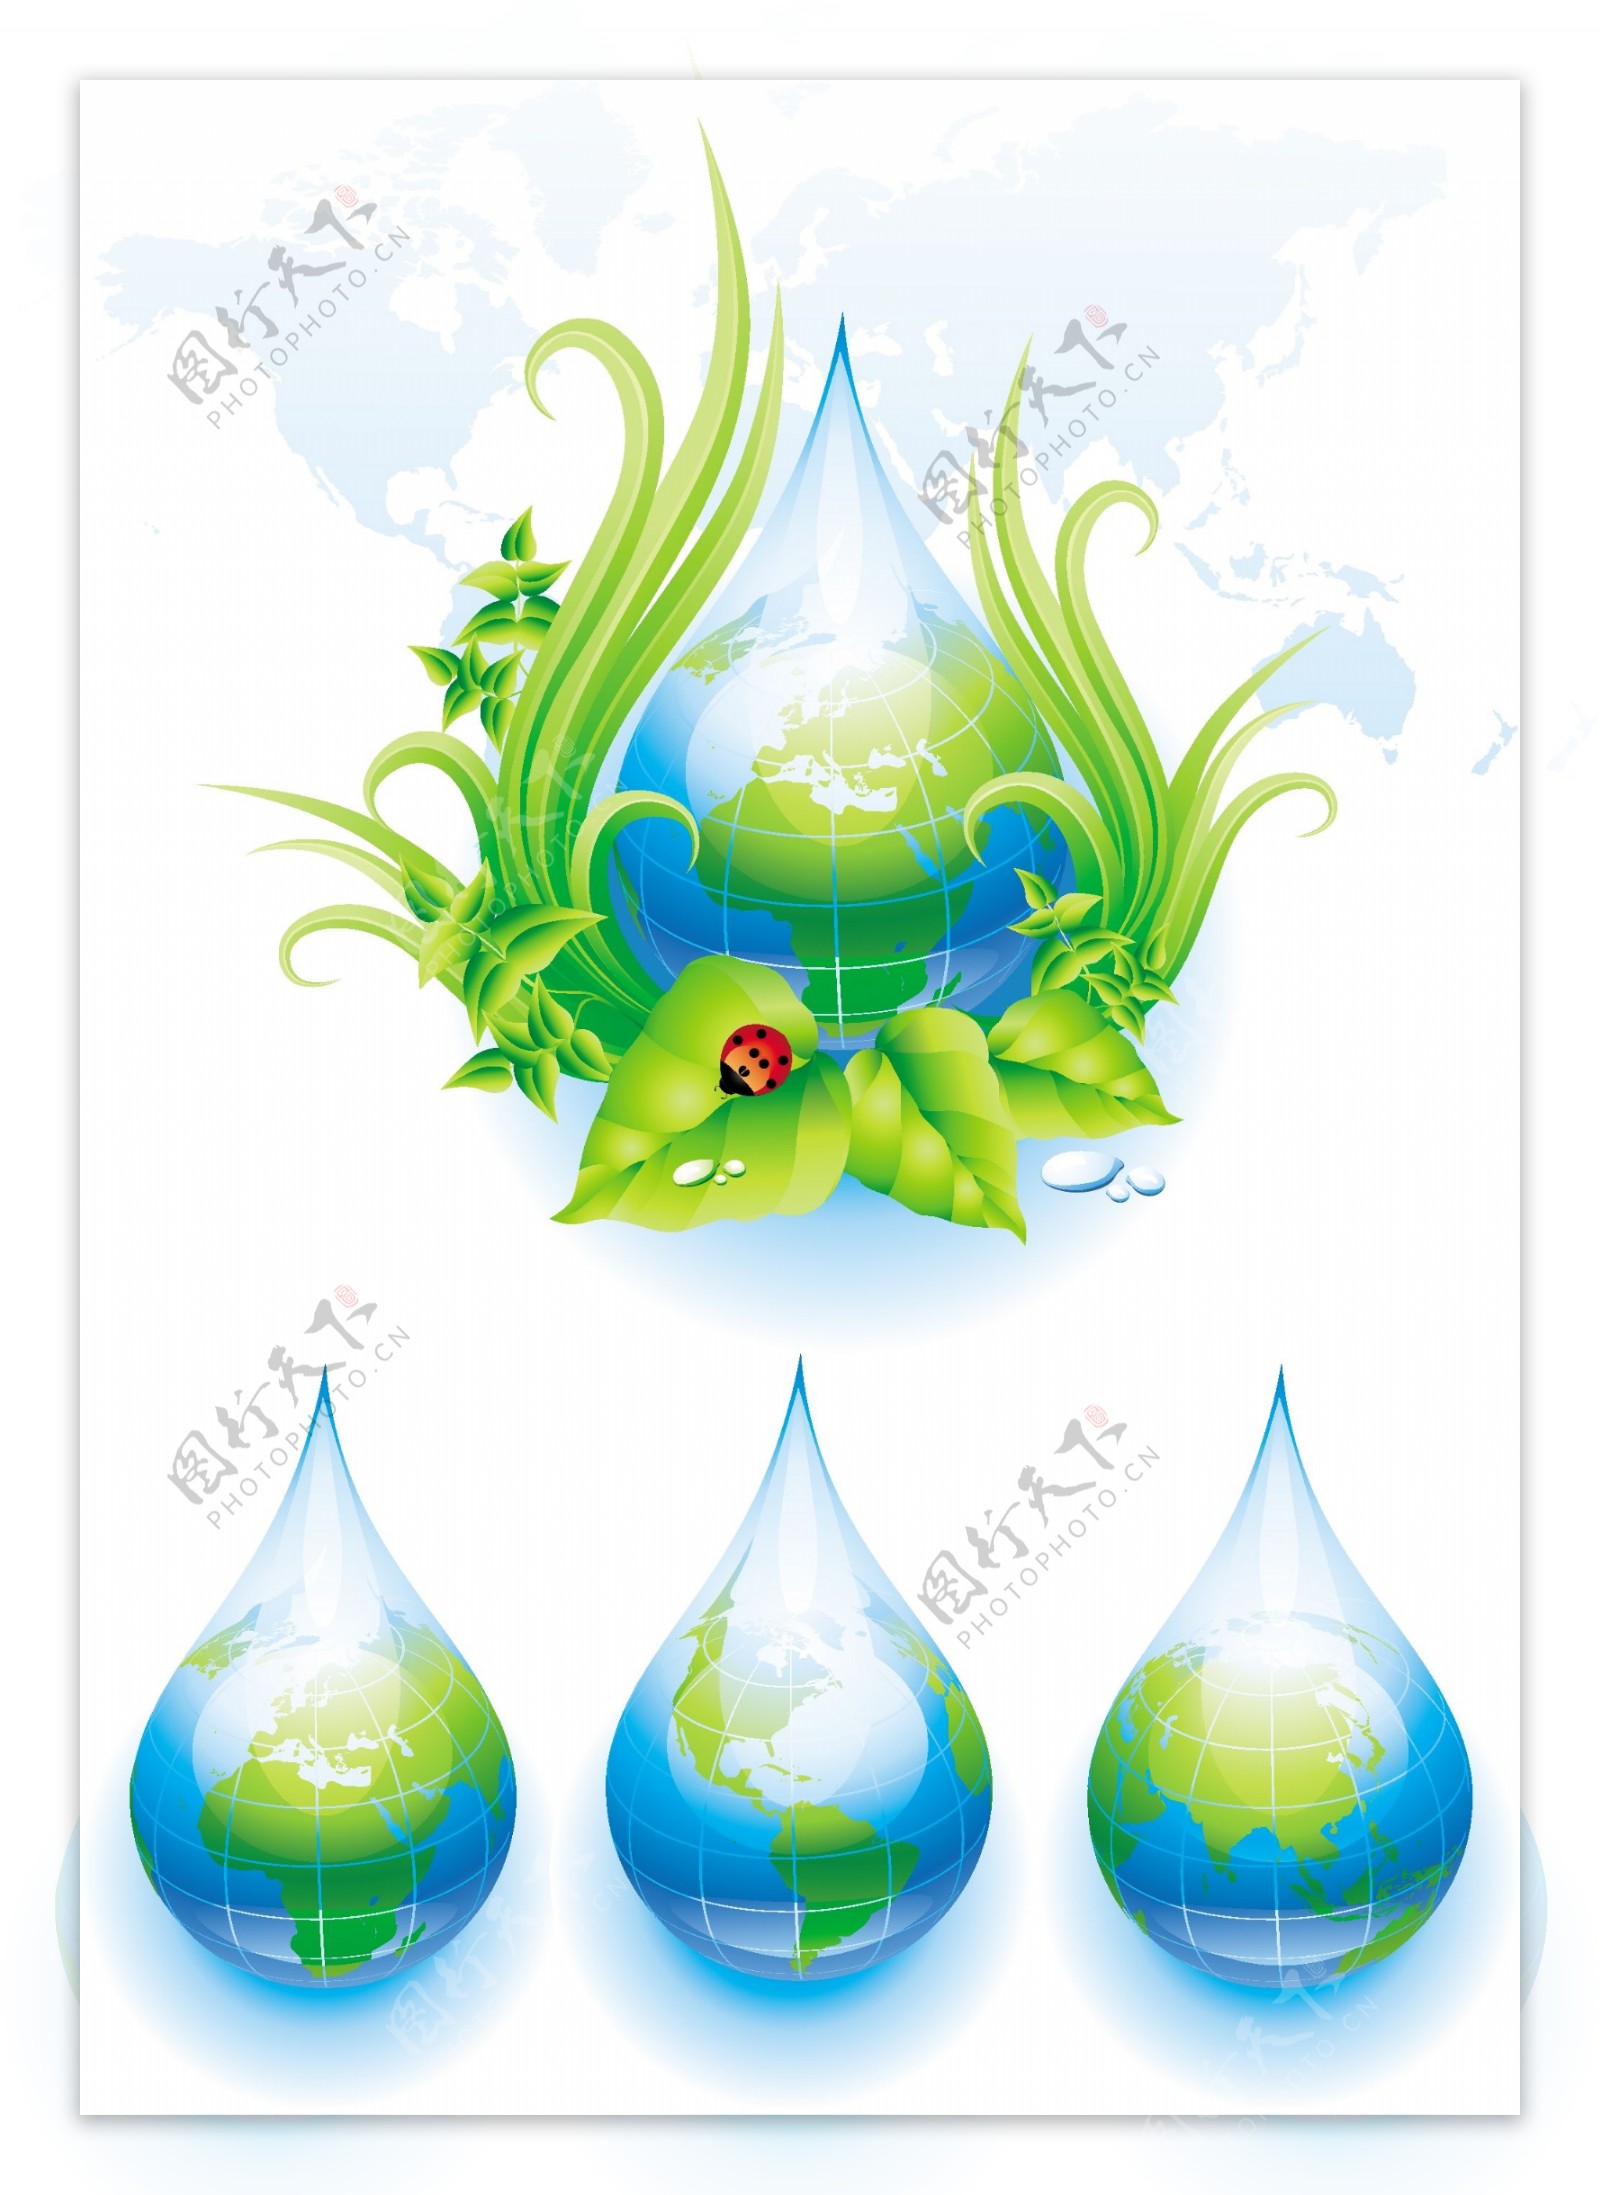 水滴生态元素矢量图下载